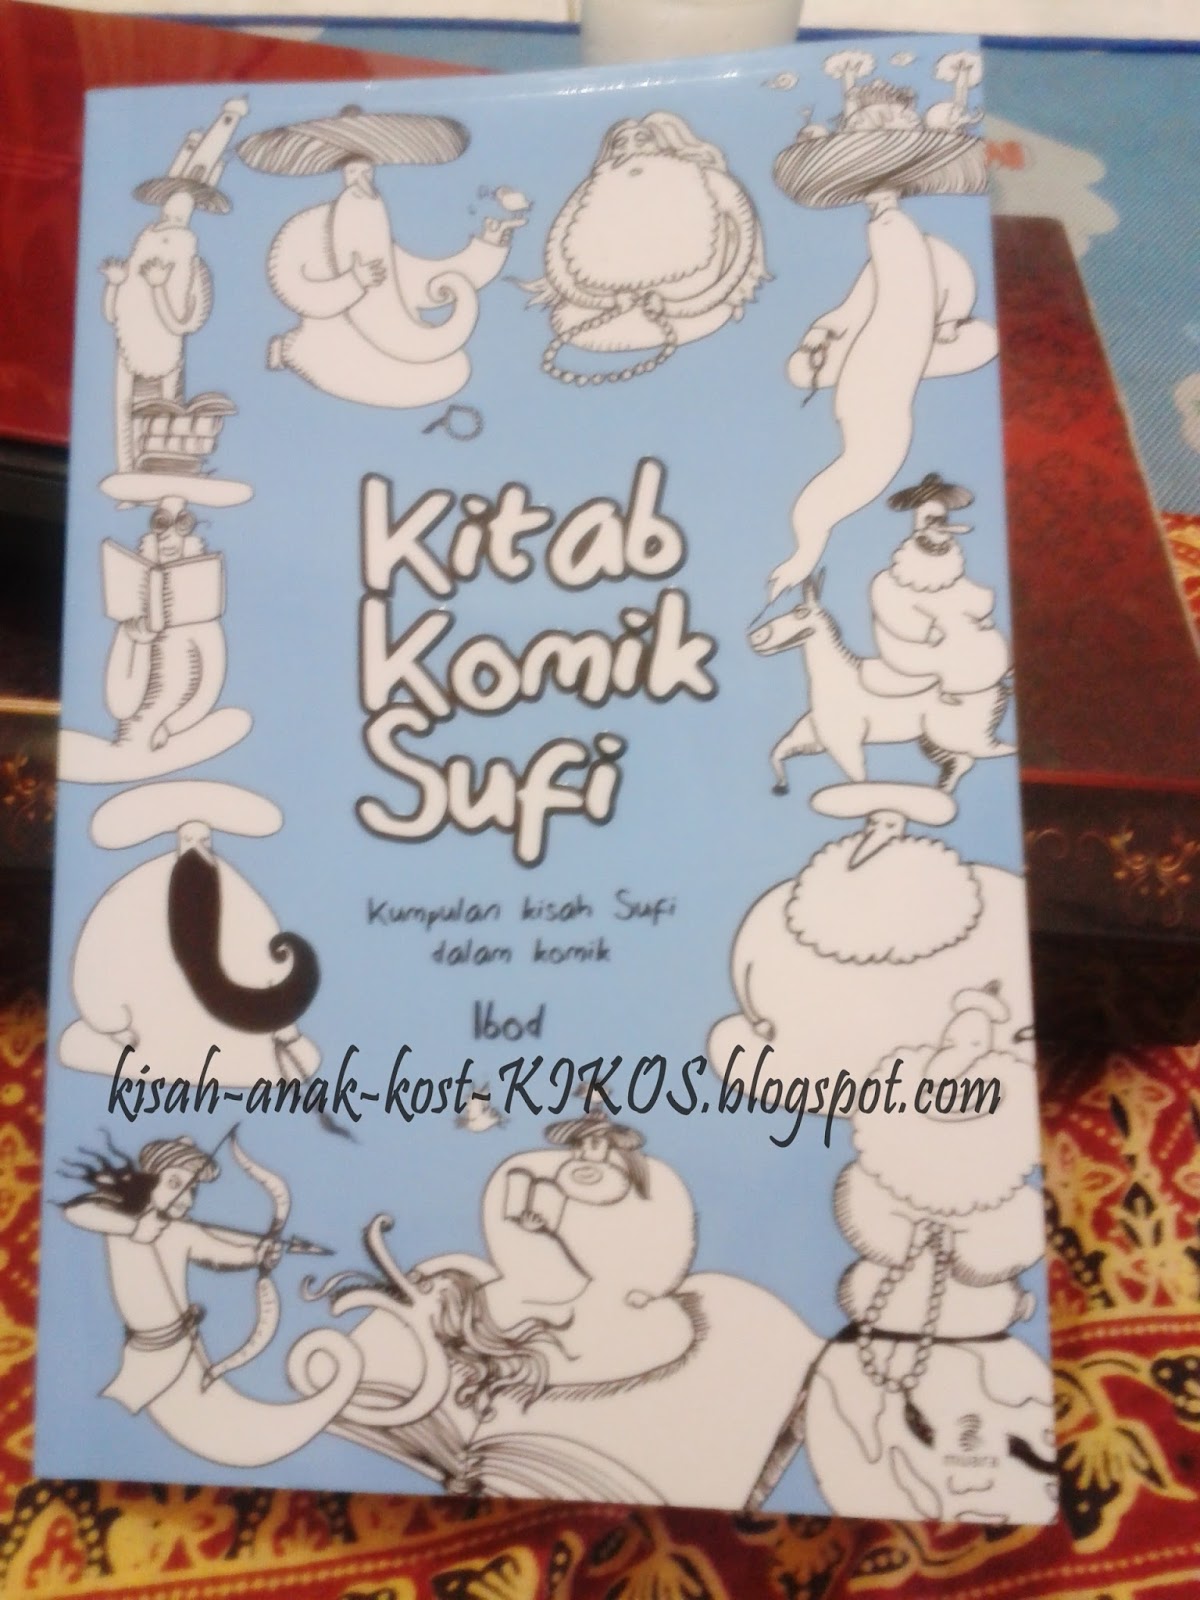 Kisah Anak Kost (KIKOS): Kitab Komik Sufi (Mempelajari 